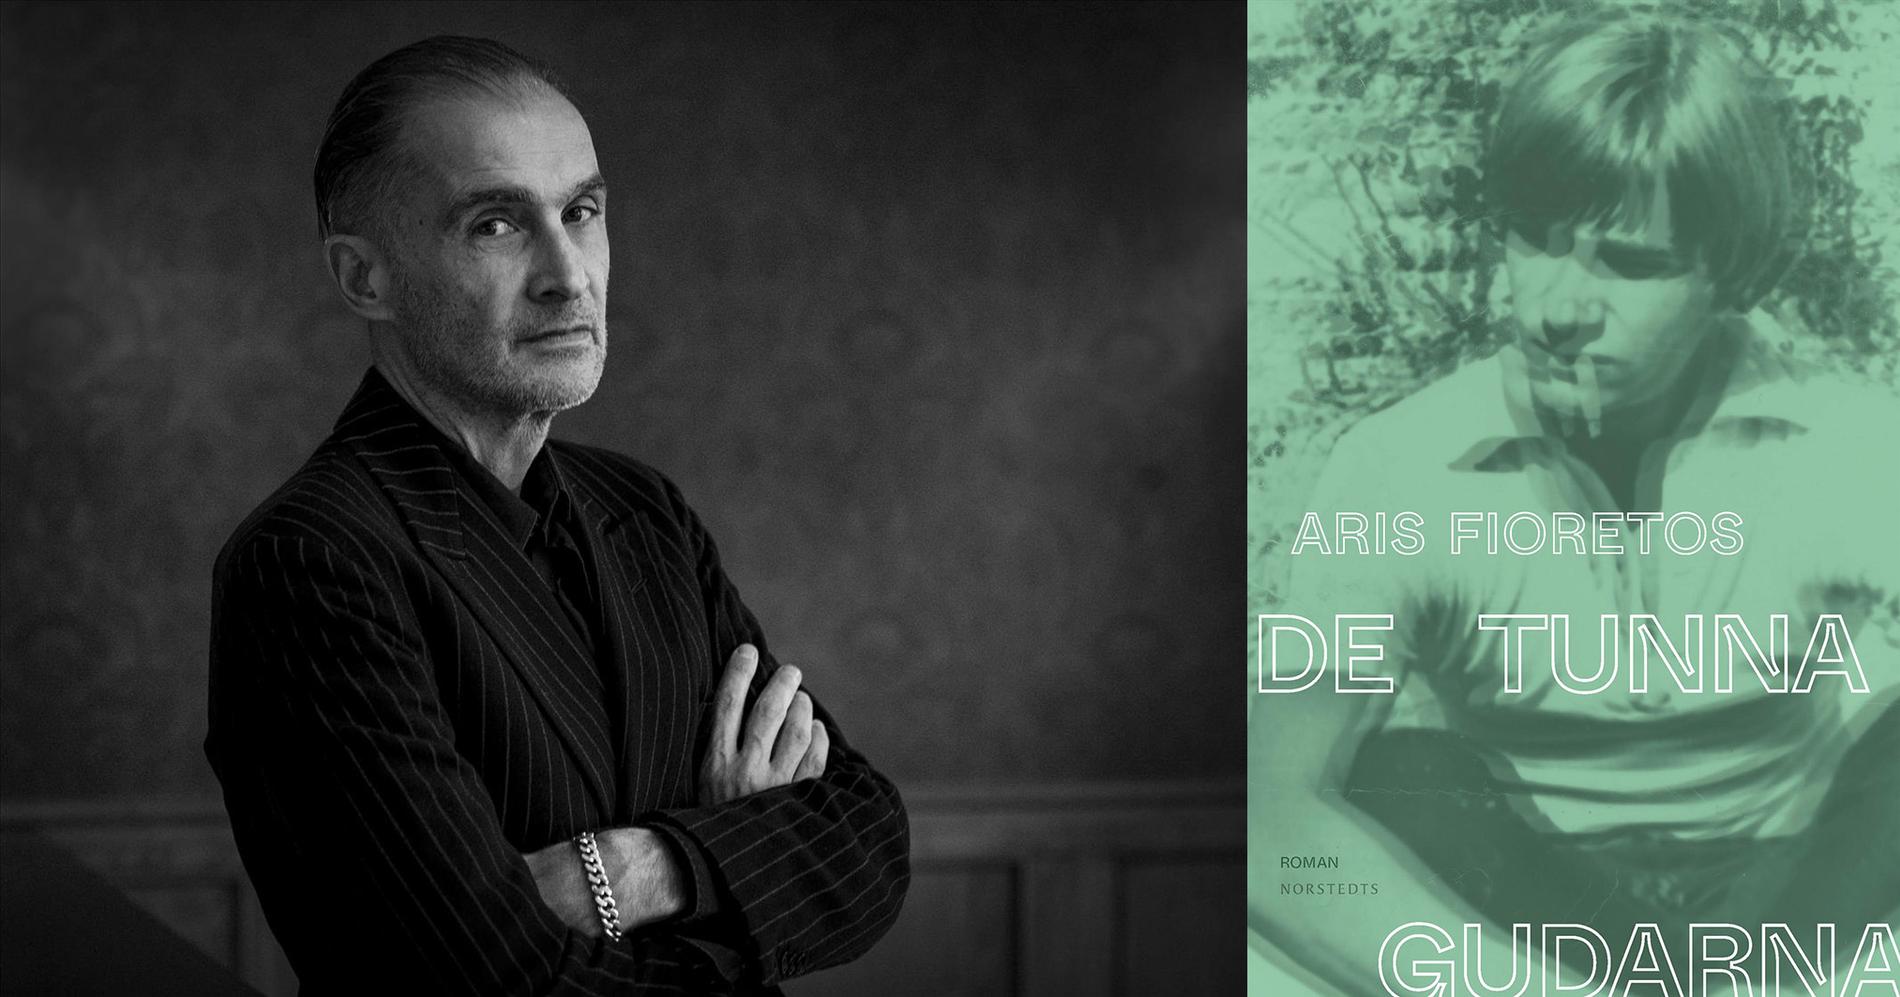 Aris Fioretos (född 1960) är författare och översättare med en stor produktion bakom sig sedan debuten 1991, senast utkom prosaboken ”Atlas” (2019).